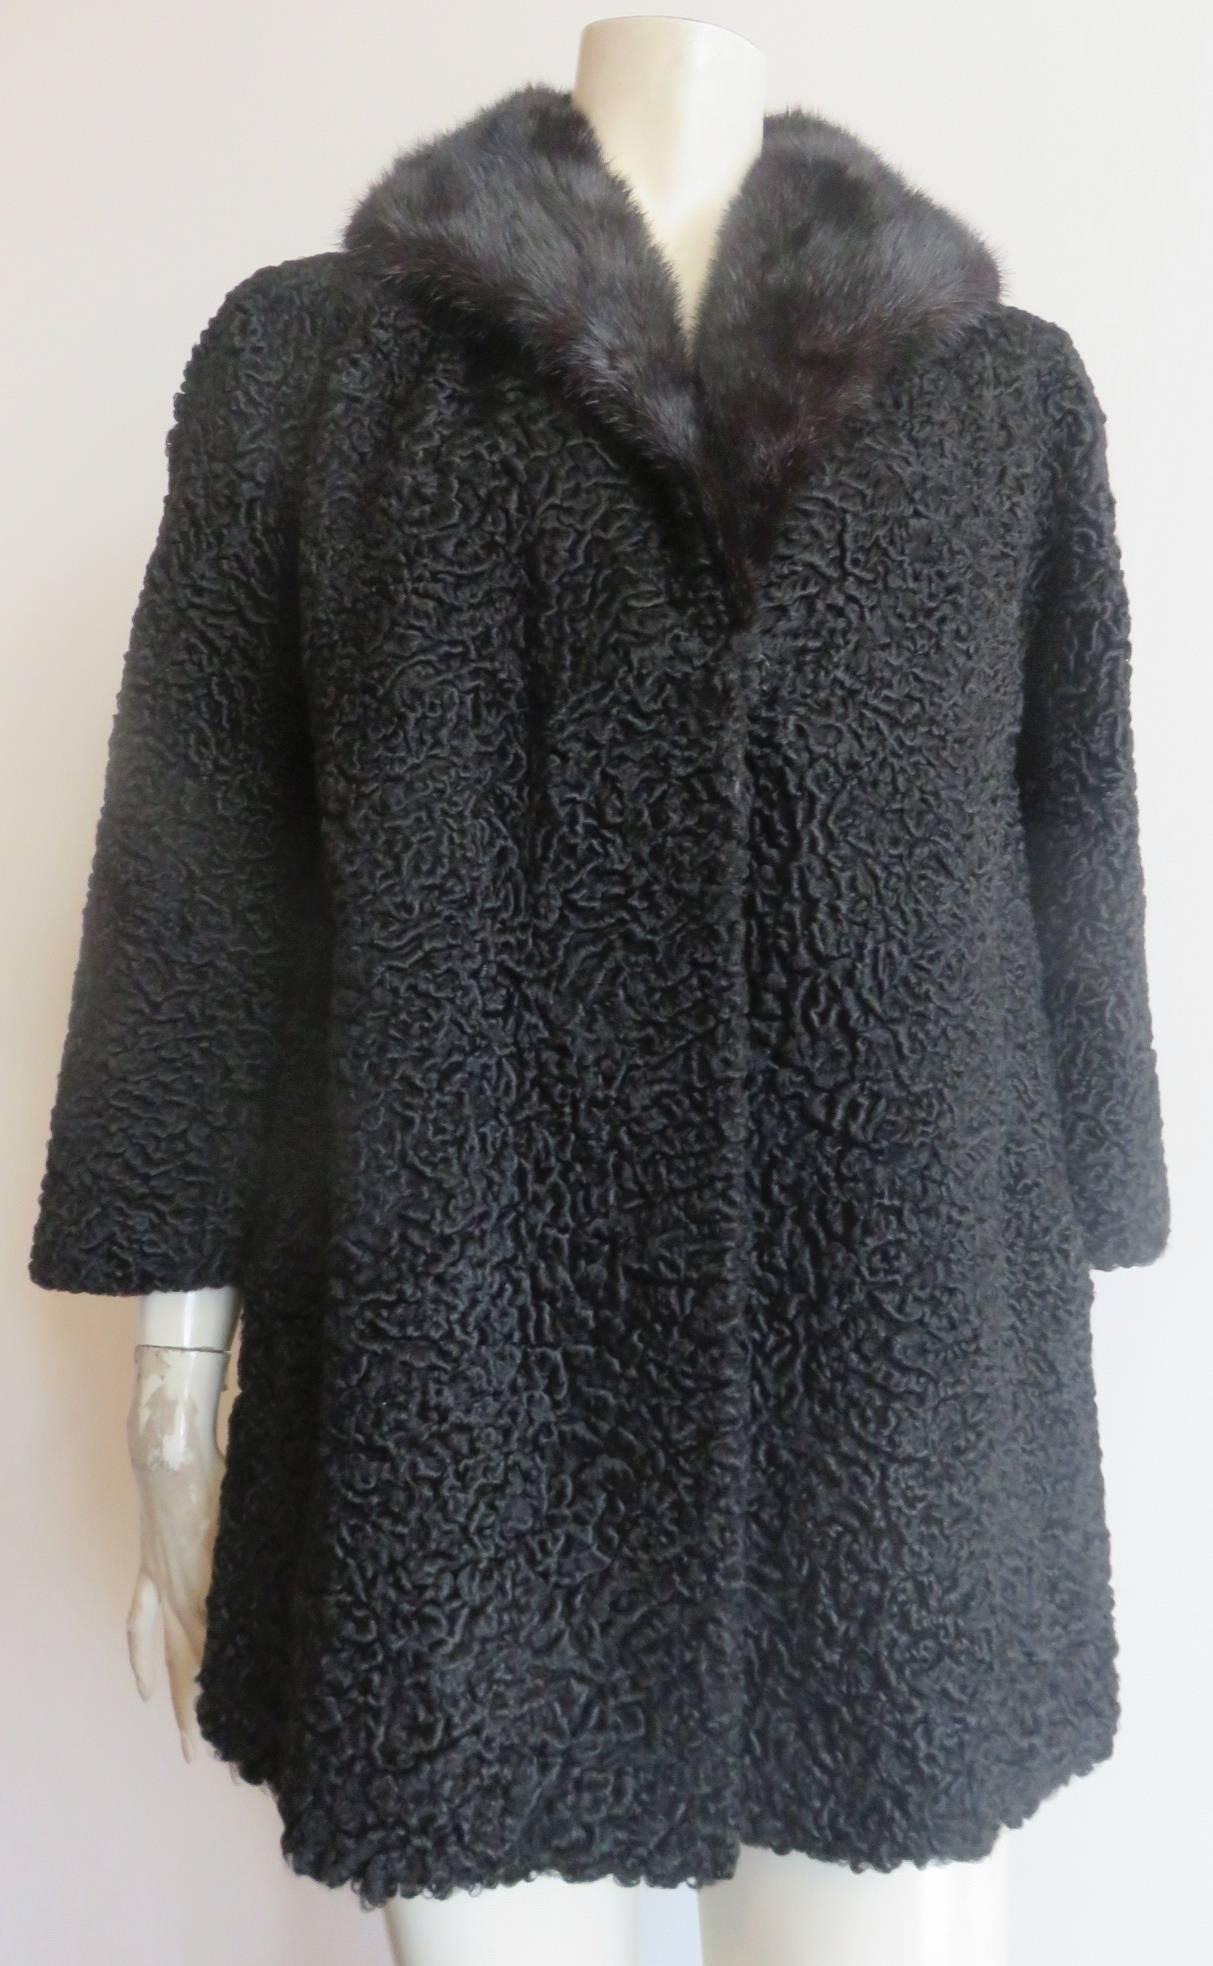 Mint/never worn condition, 1960's, MAX BOGEN Genuine, black, persian lamb & mink fur coat.

Polished, mink fur, shawl collar with lush, black, persian lamb fur shell.

Concealed, side waist pockets with moleskin pocket bag lining.

Concealed,